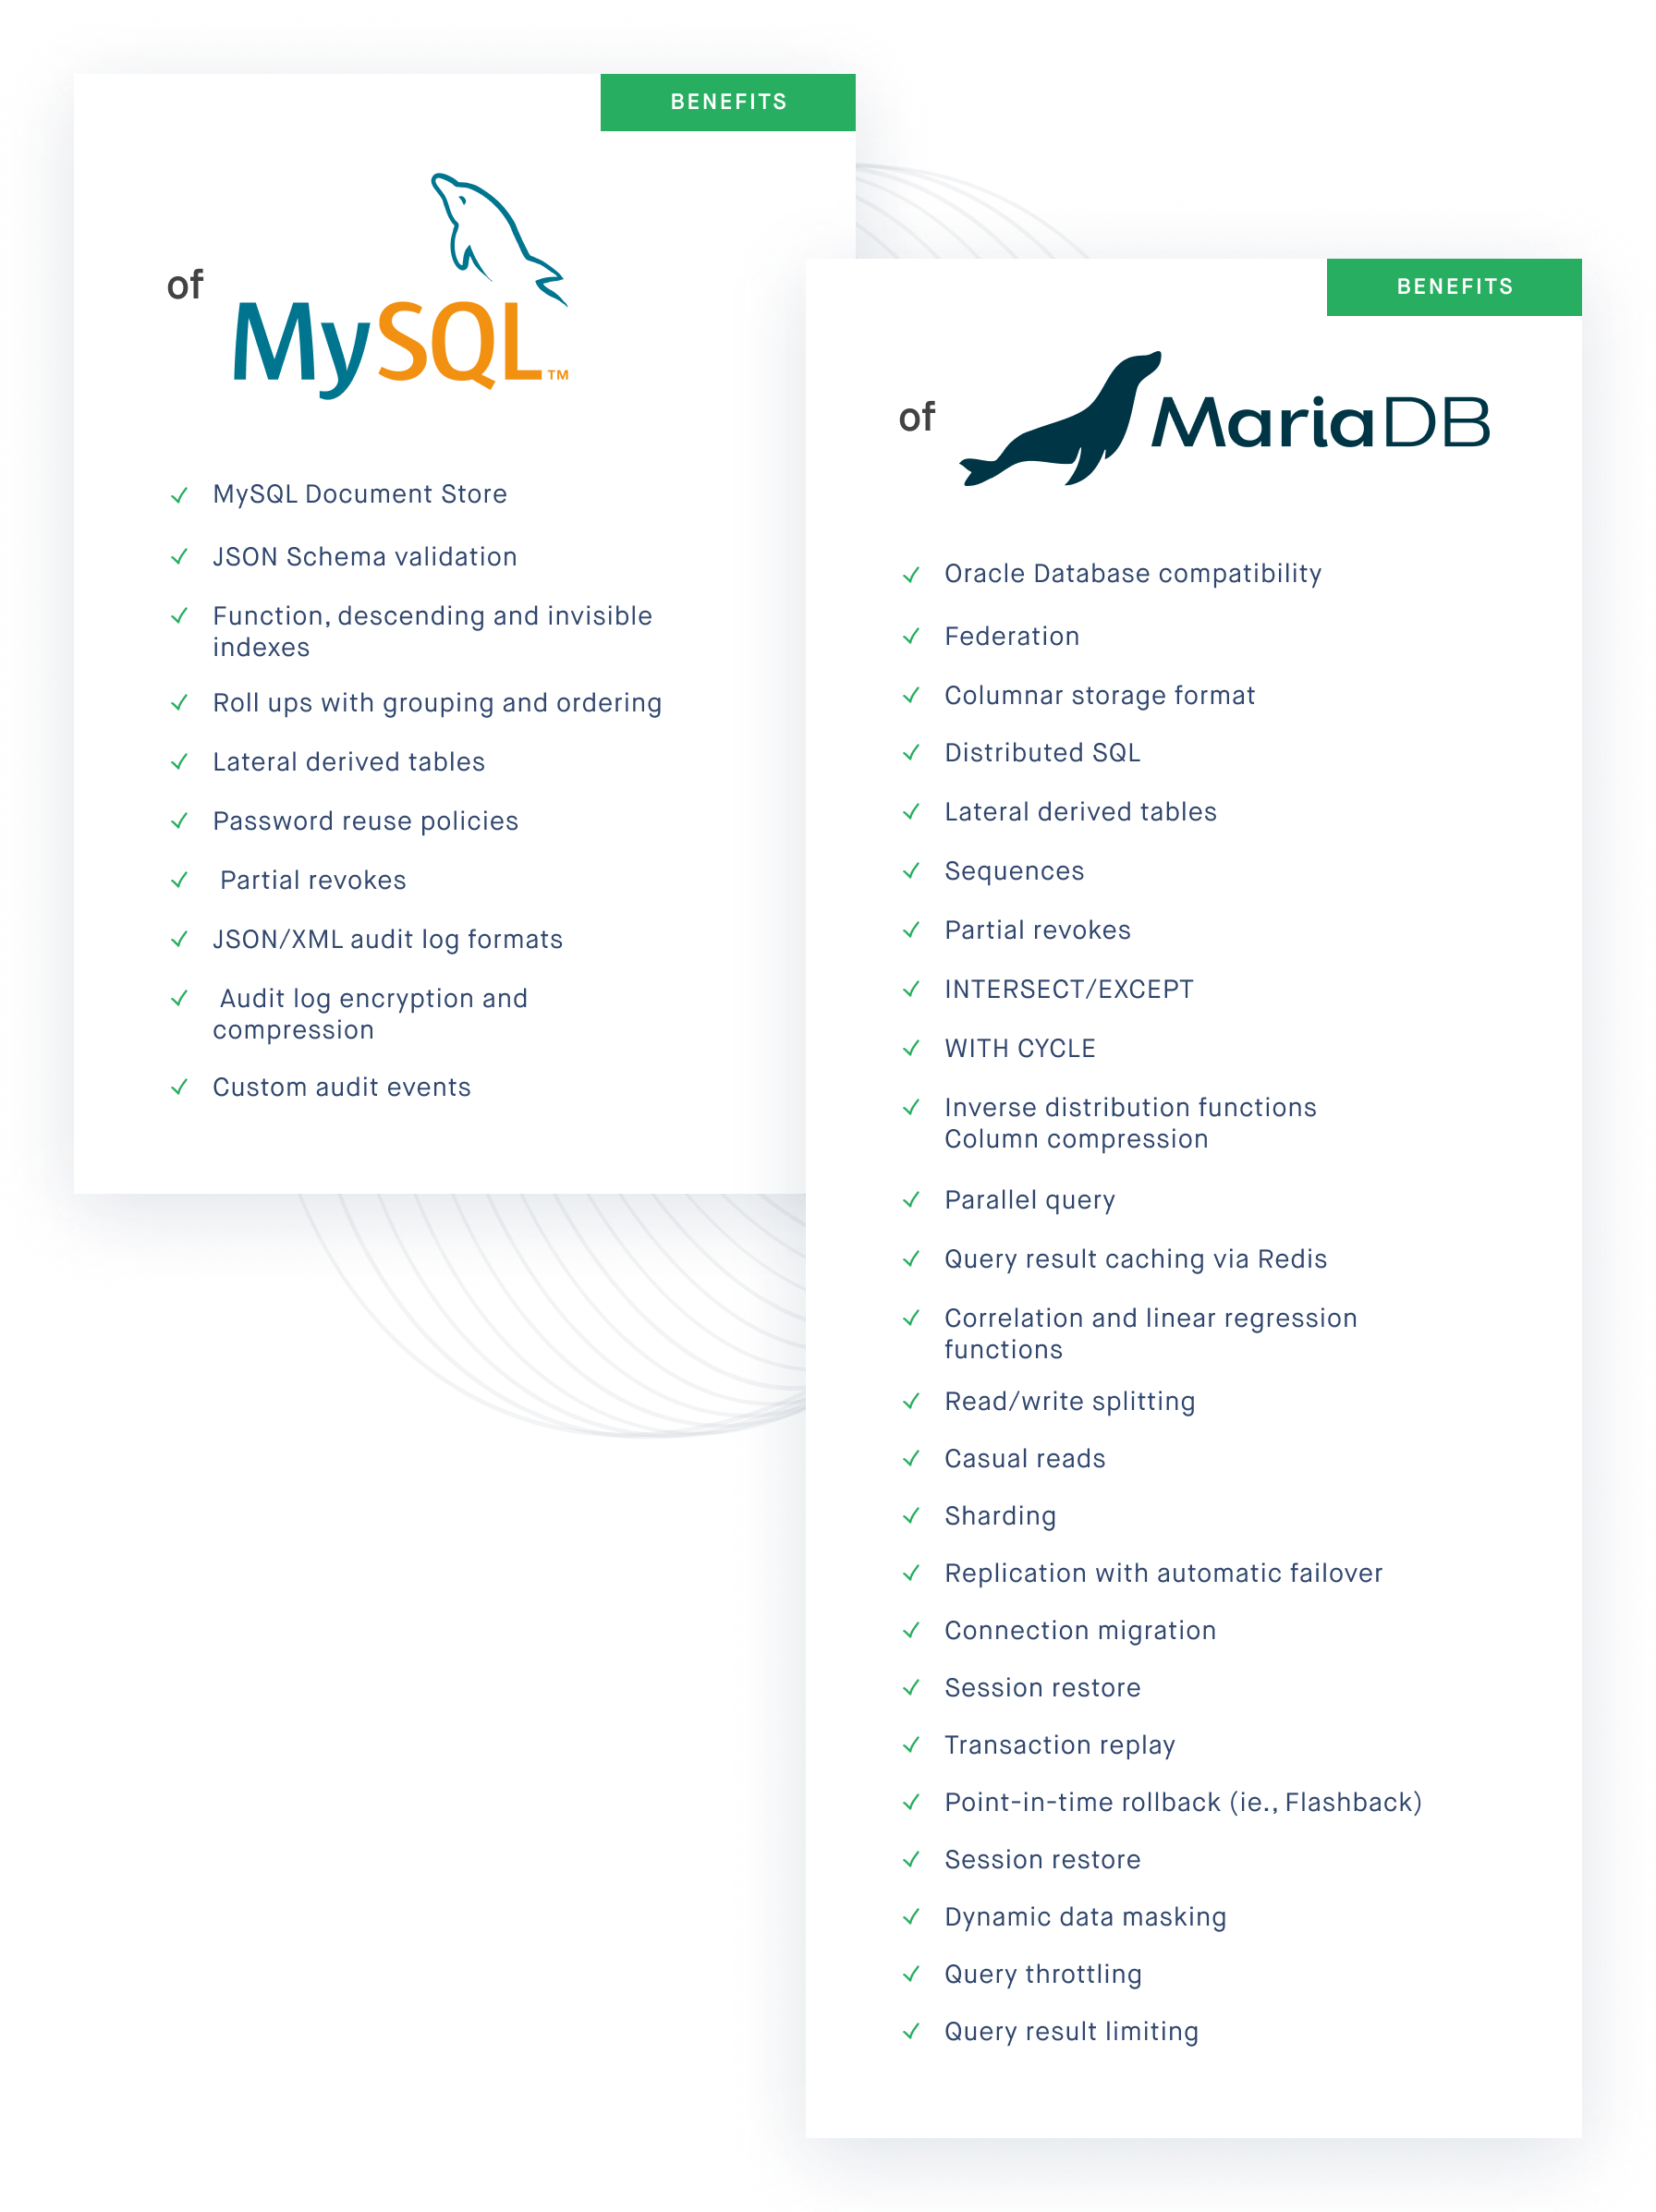 MySQL vs MariaDM comparison